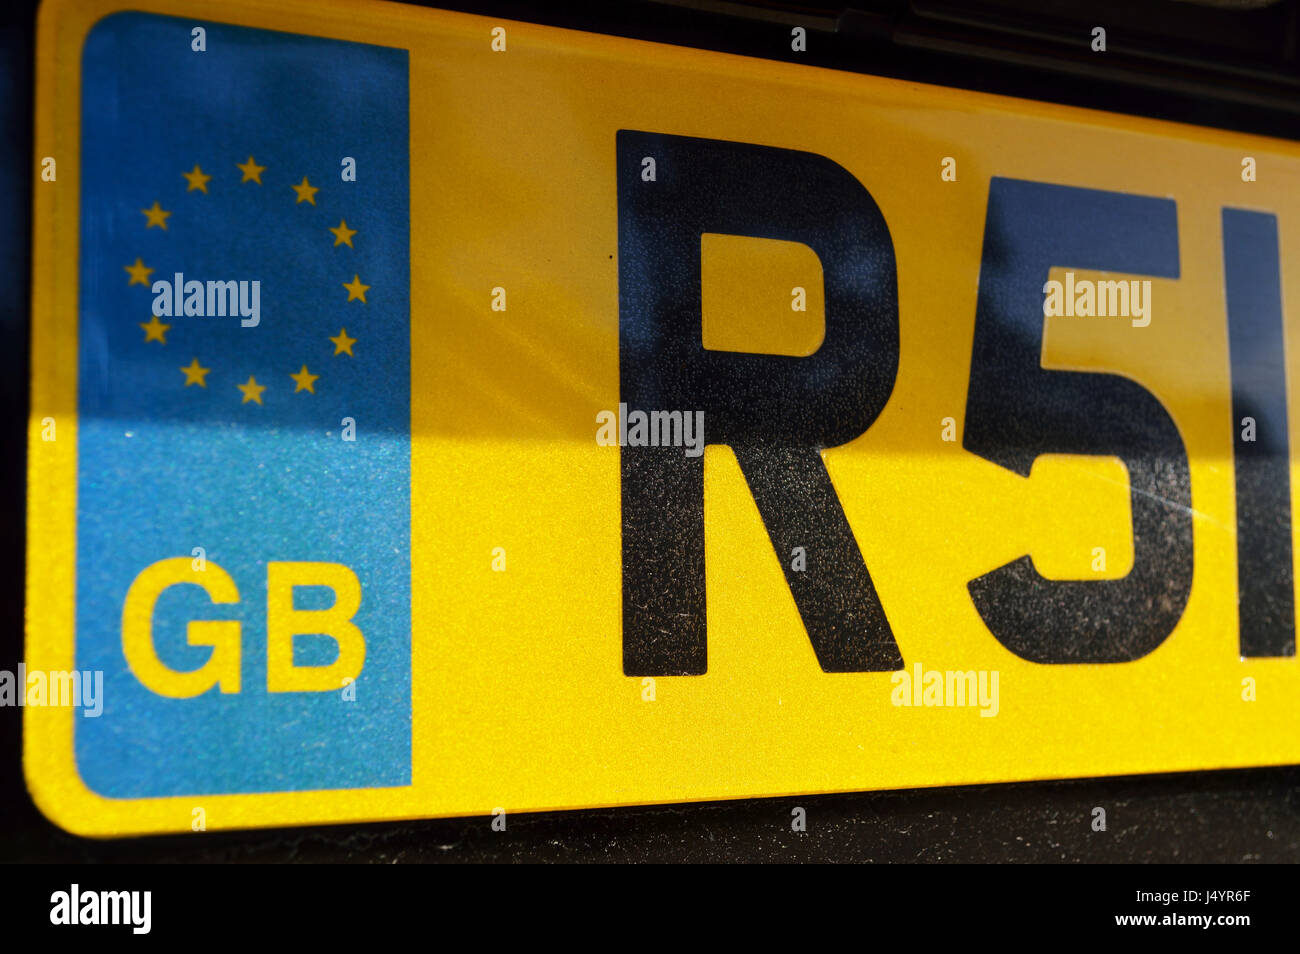 UK EU gelbe Kfz-Kennzeichen mit EU-Flagge und GB Zeichen Stockfotografie -  Alamy